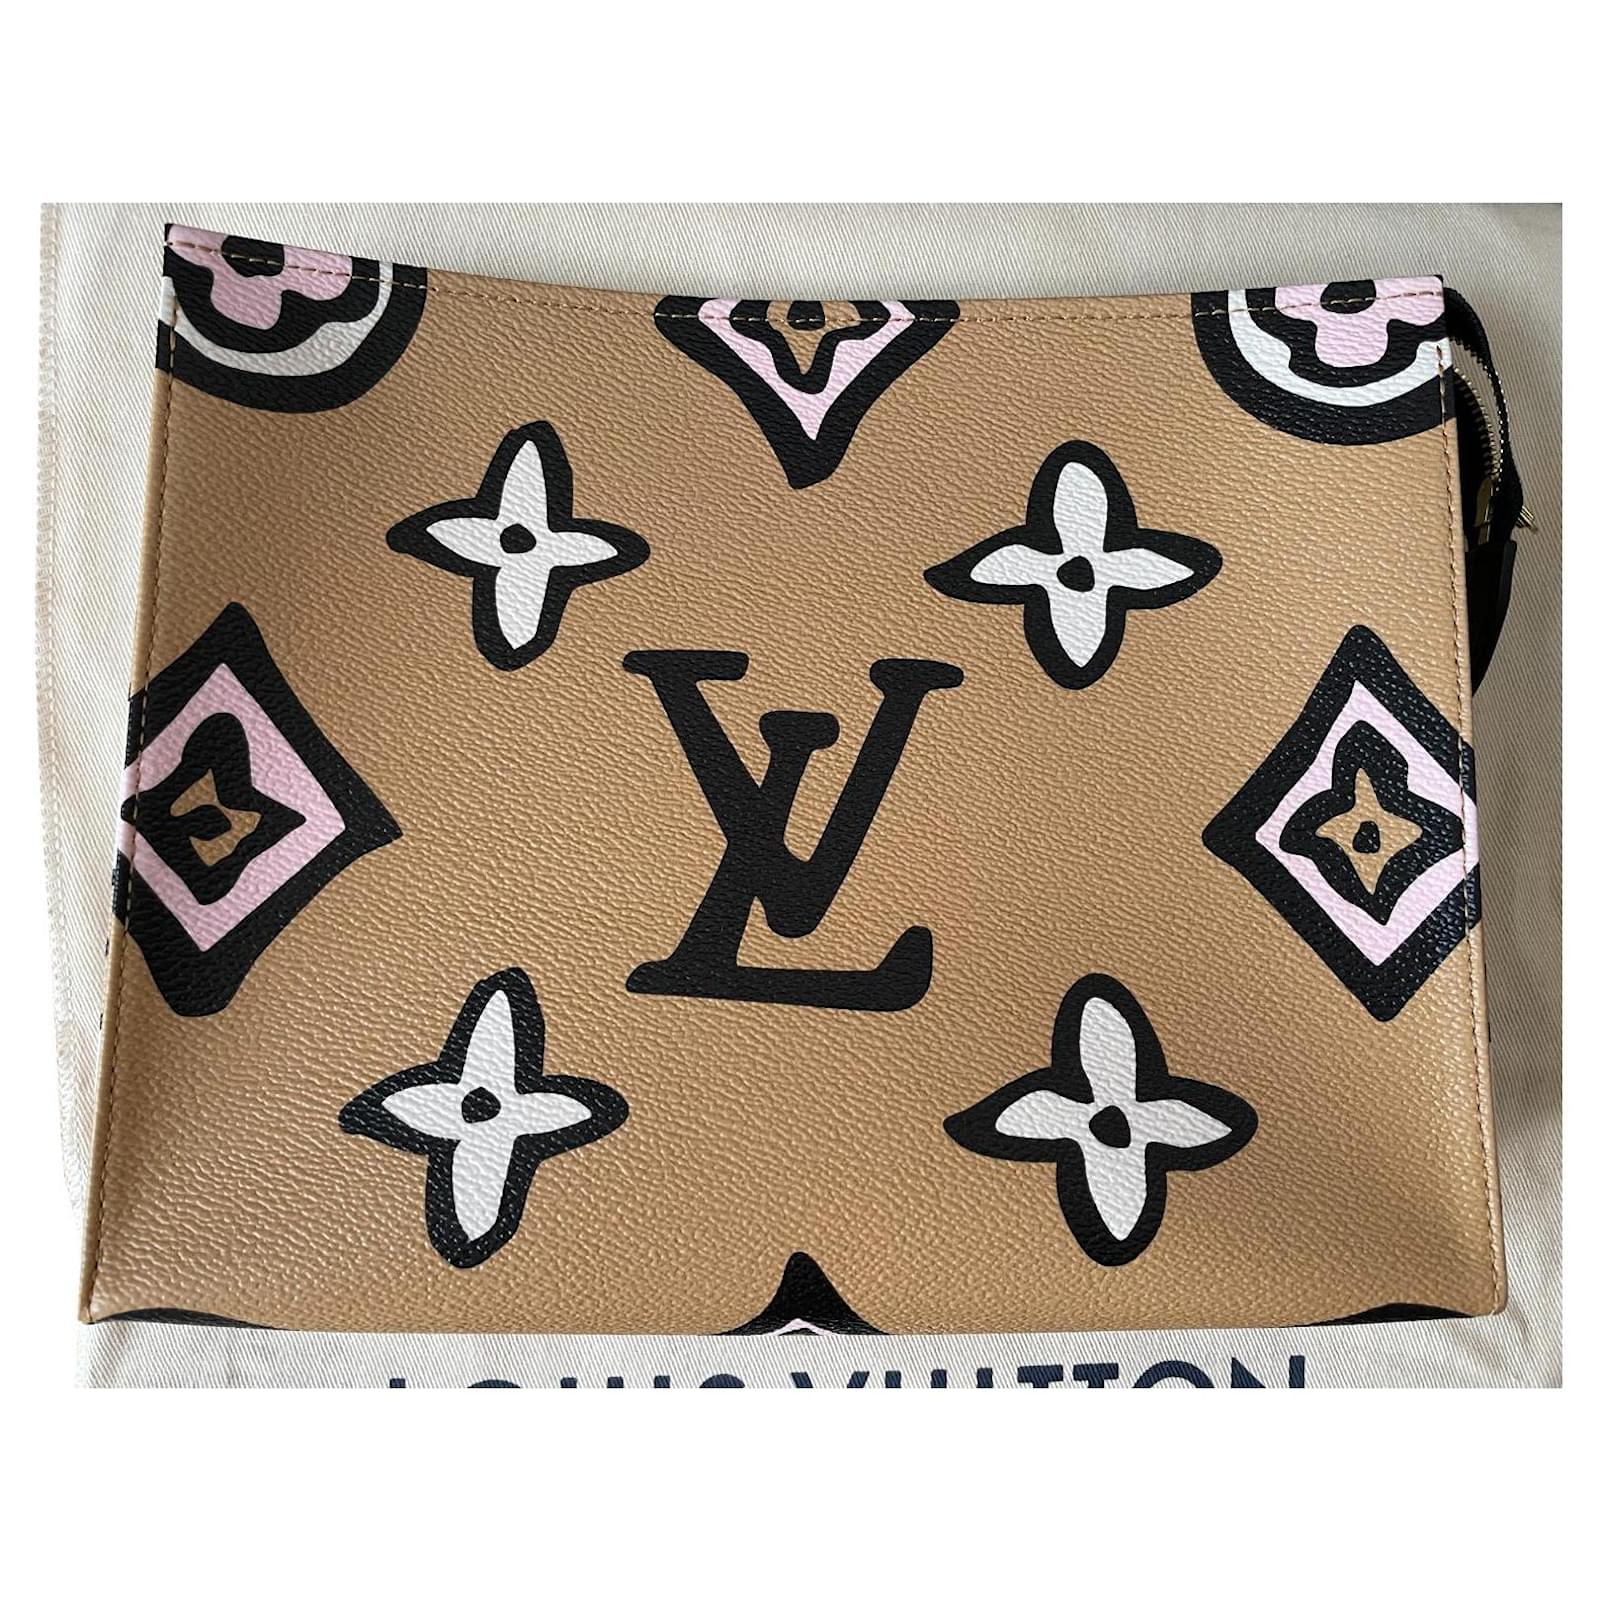 Louis Vuitton Damen Taschen Neue Kollektion